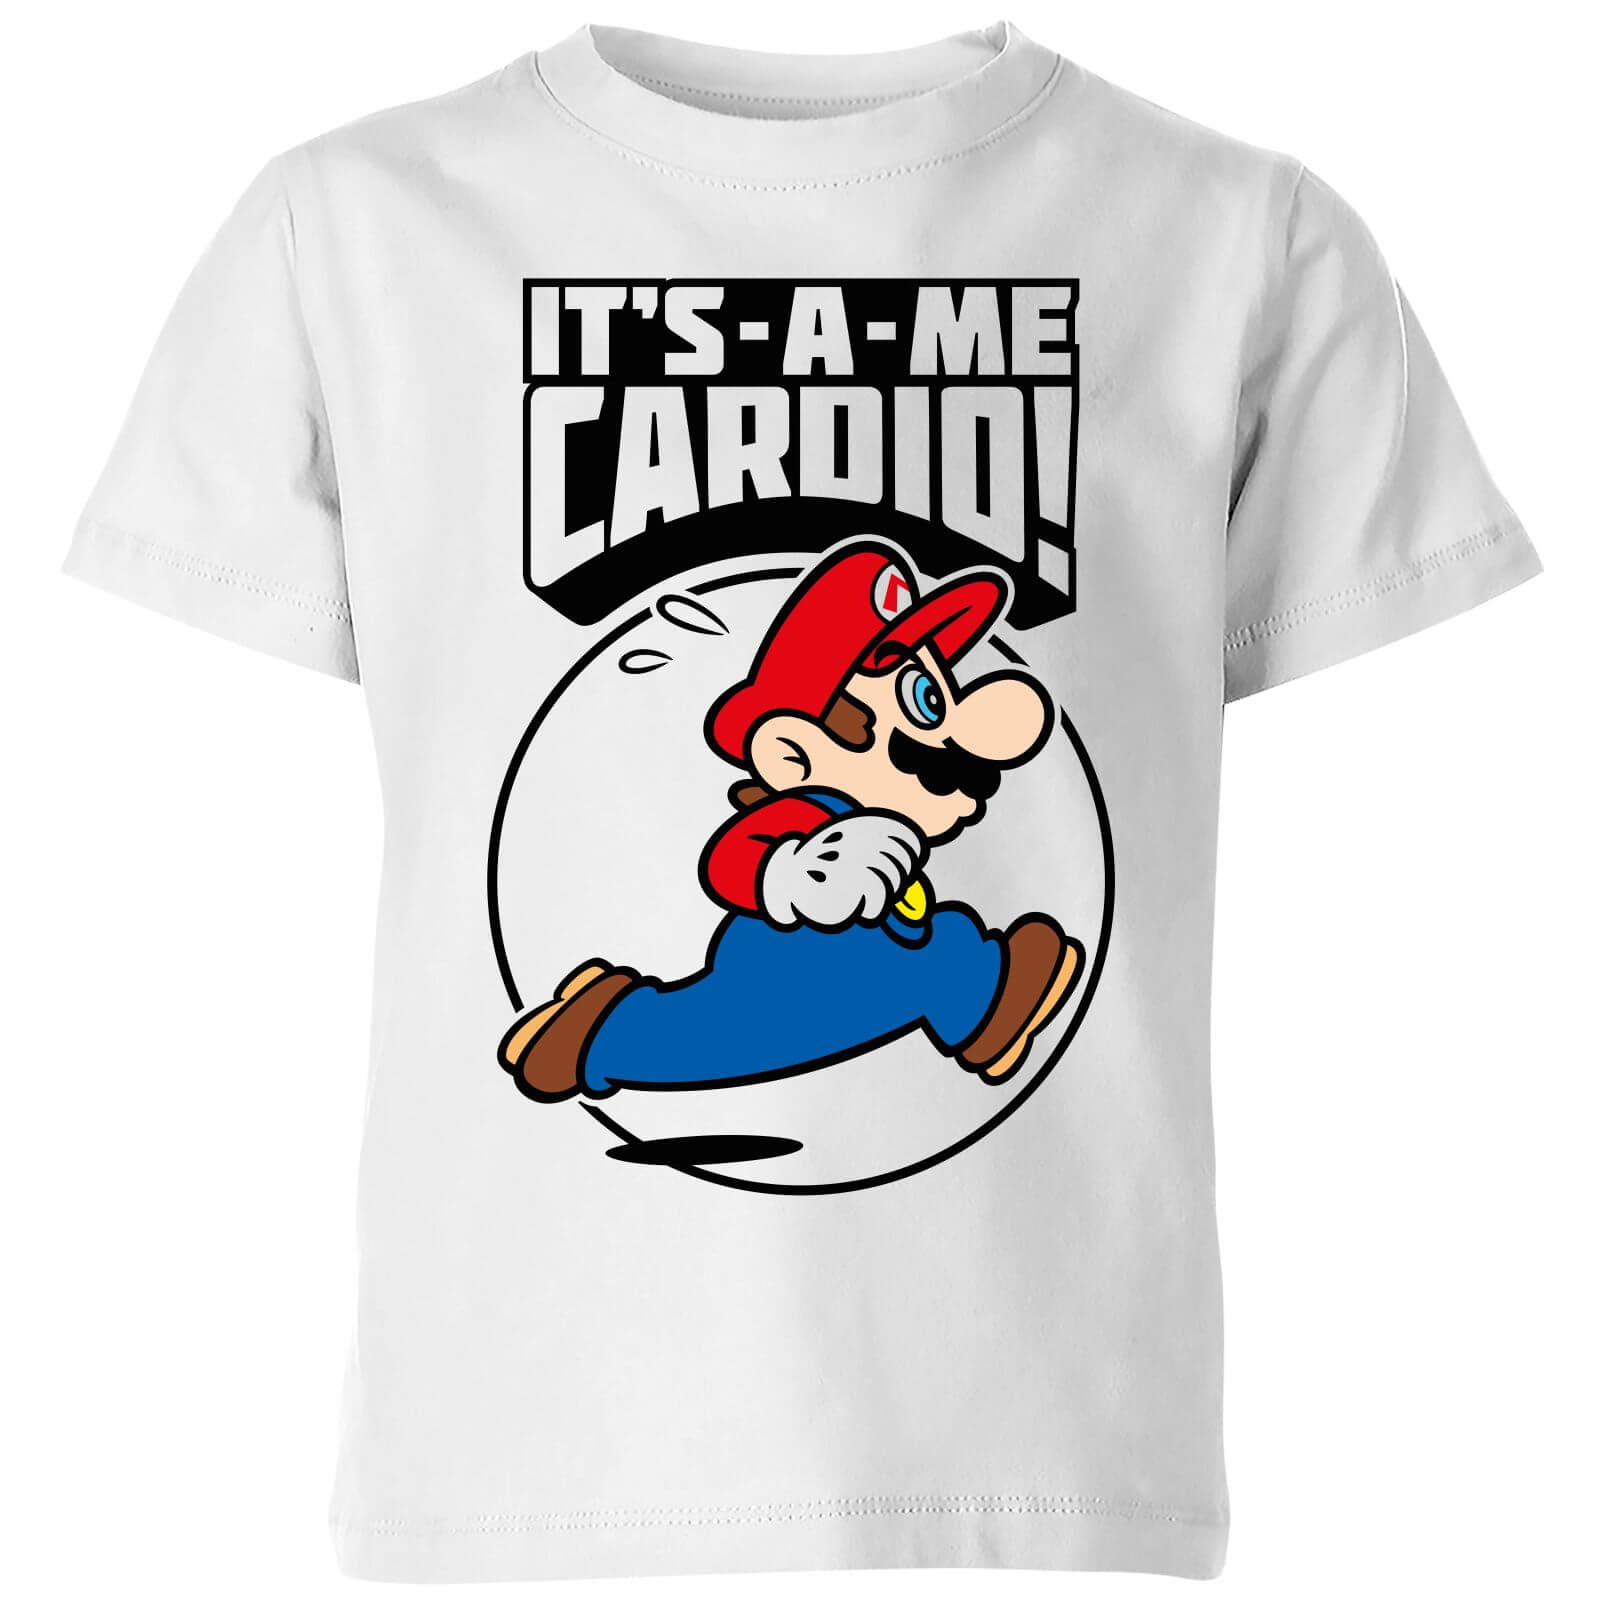 Nintendo Super Mario Cardio Kids' T-Shirt - White - 11-12 Years